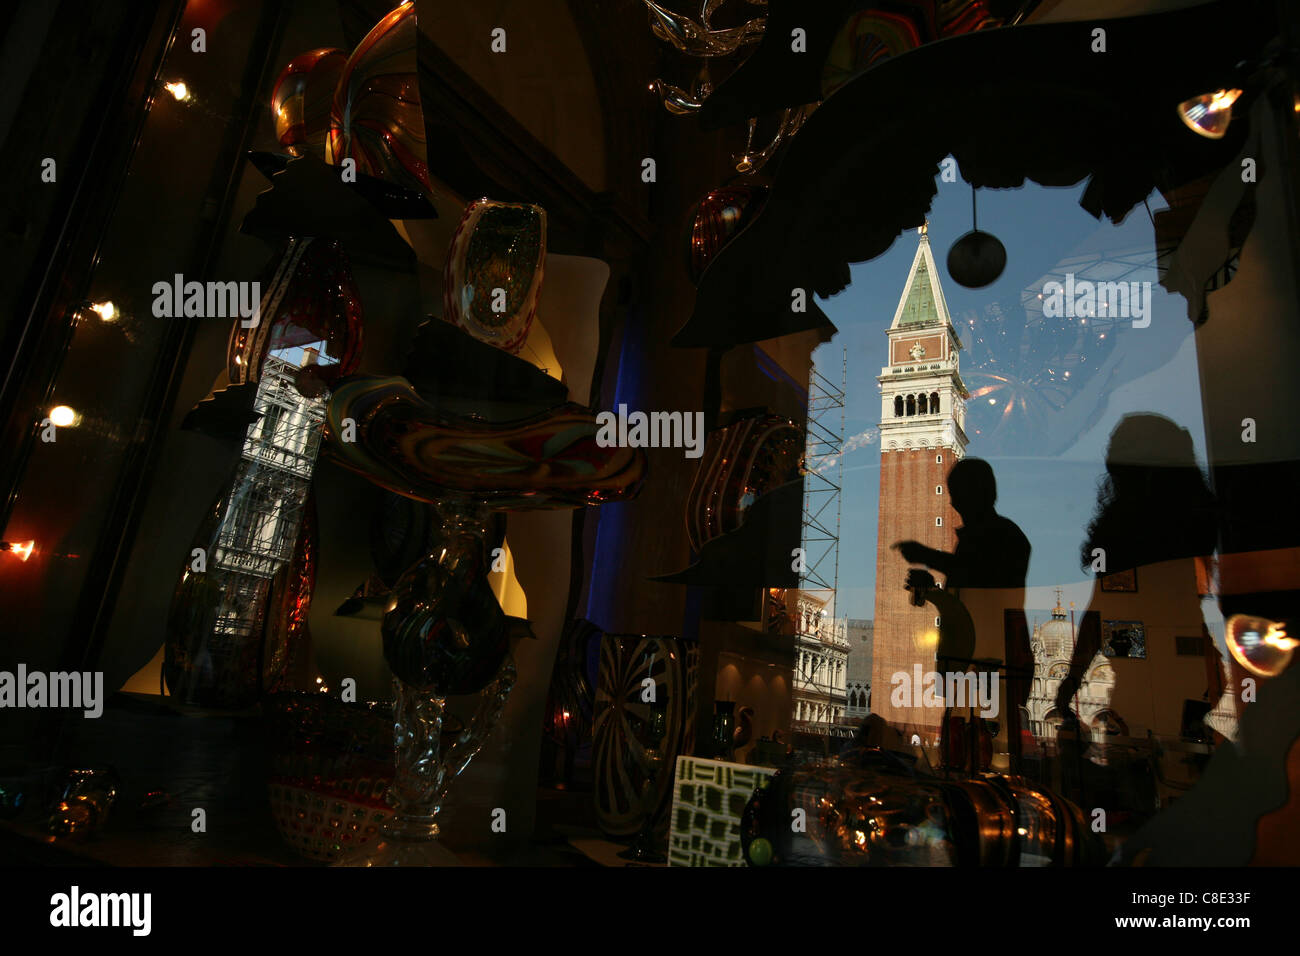 Reflexion des Campanile in einem Schaufenster mit venezianischem Glas am Piazza San Marco in Venedig, Italien. Stockfoto